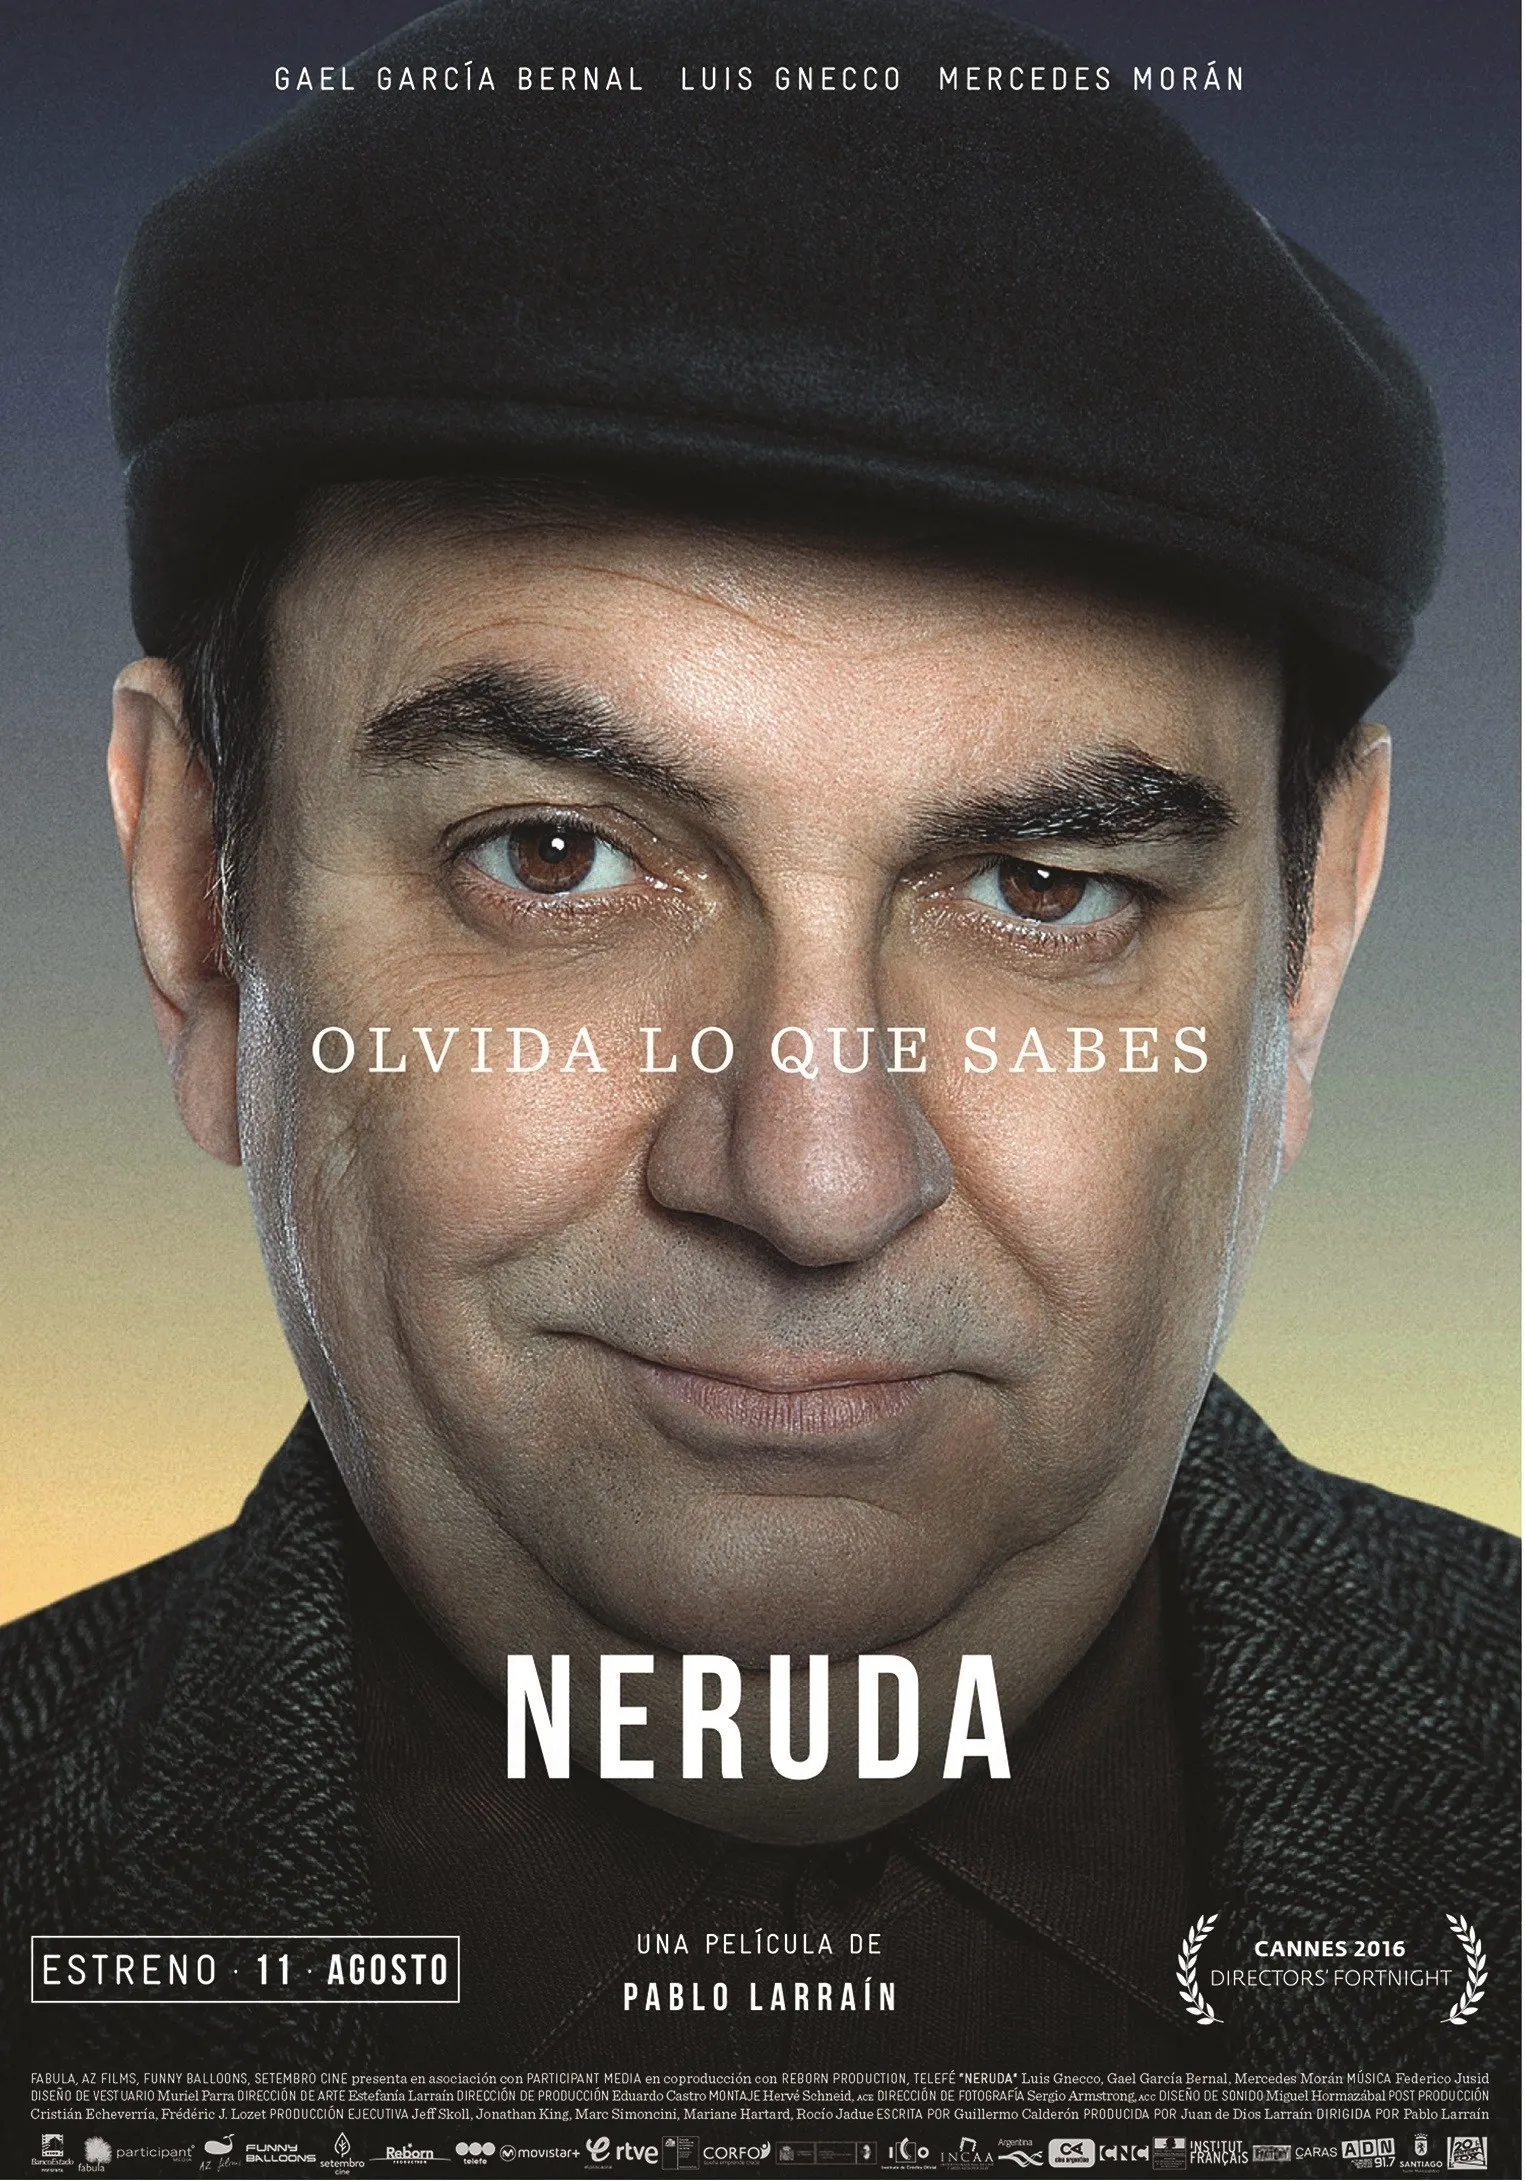 Segundo cartel de la película Neruda de Pablo Larraín, 2016.